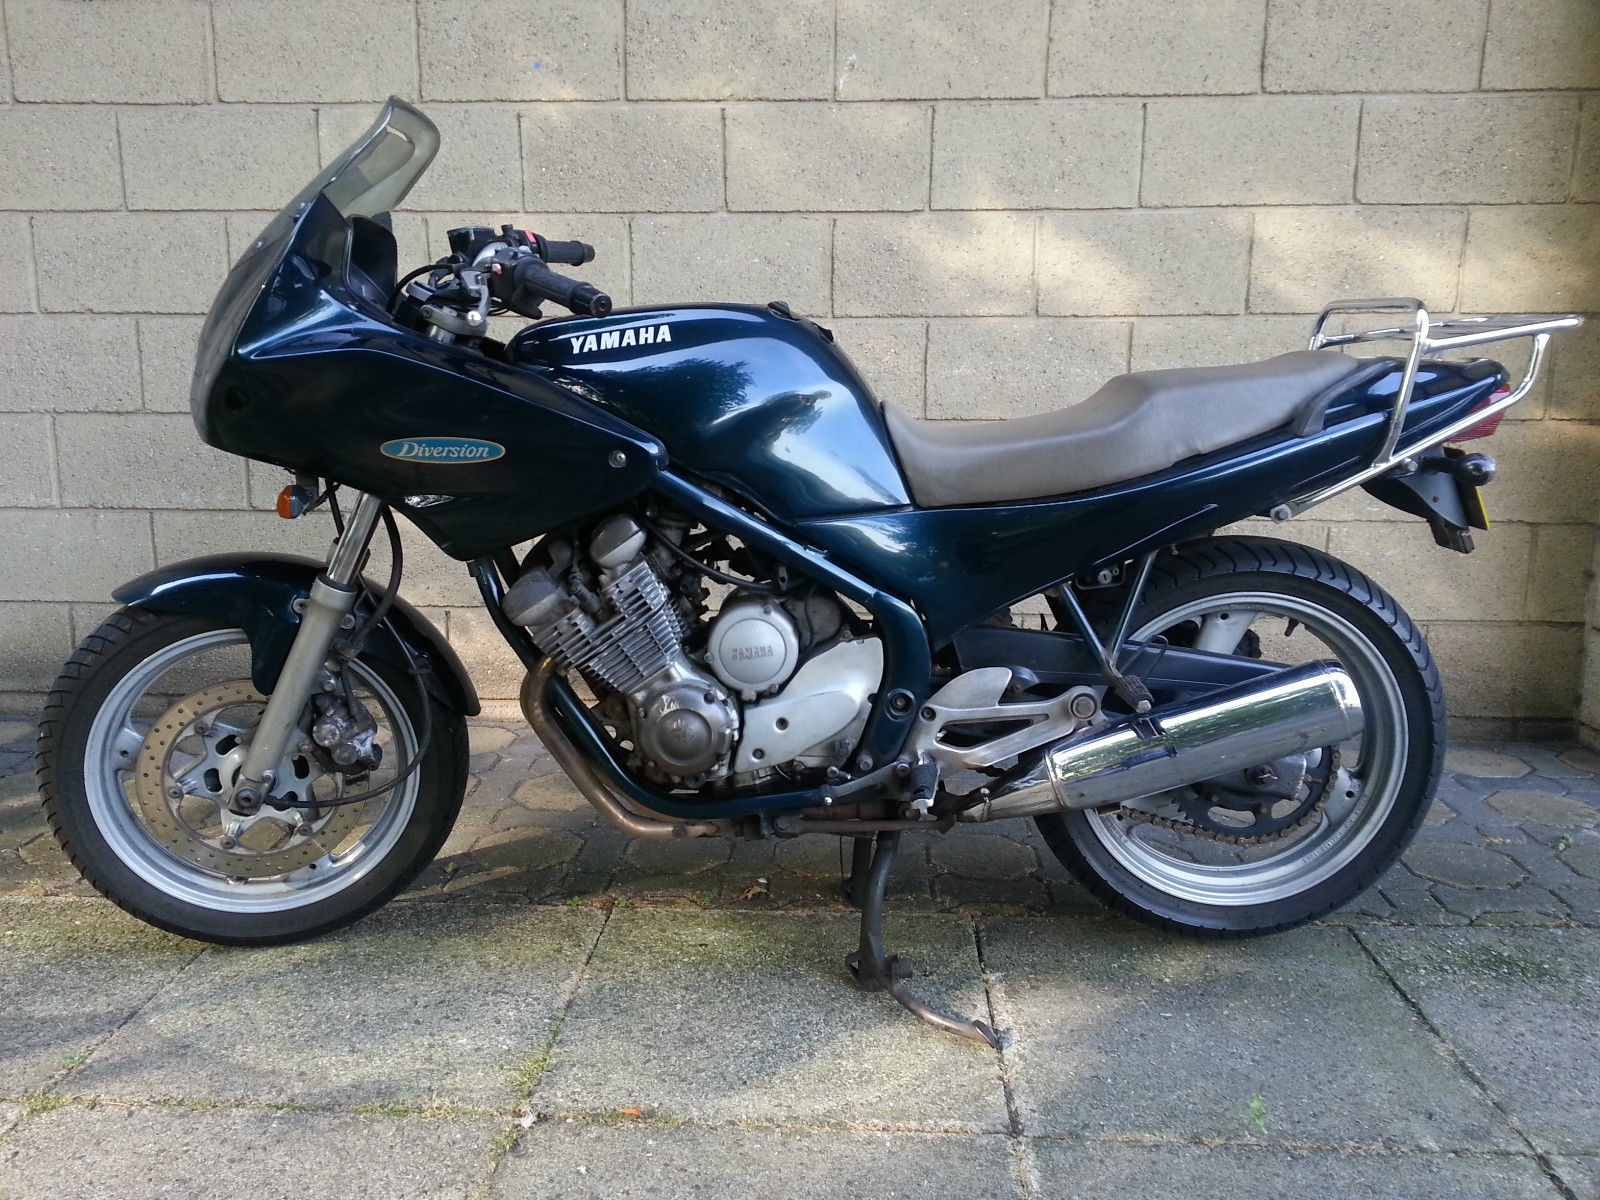 Стильный средне кубаторный мотоцикл — Yamaha Diversion 600